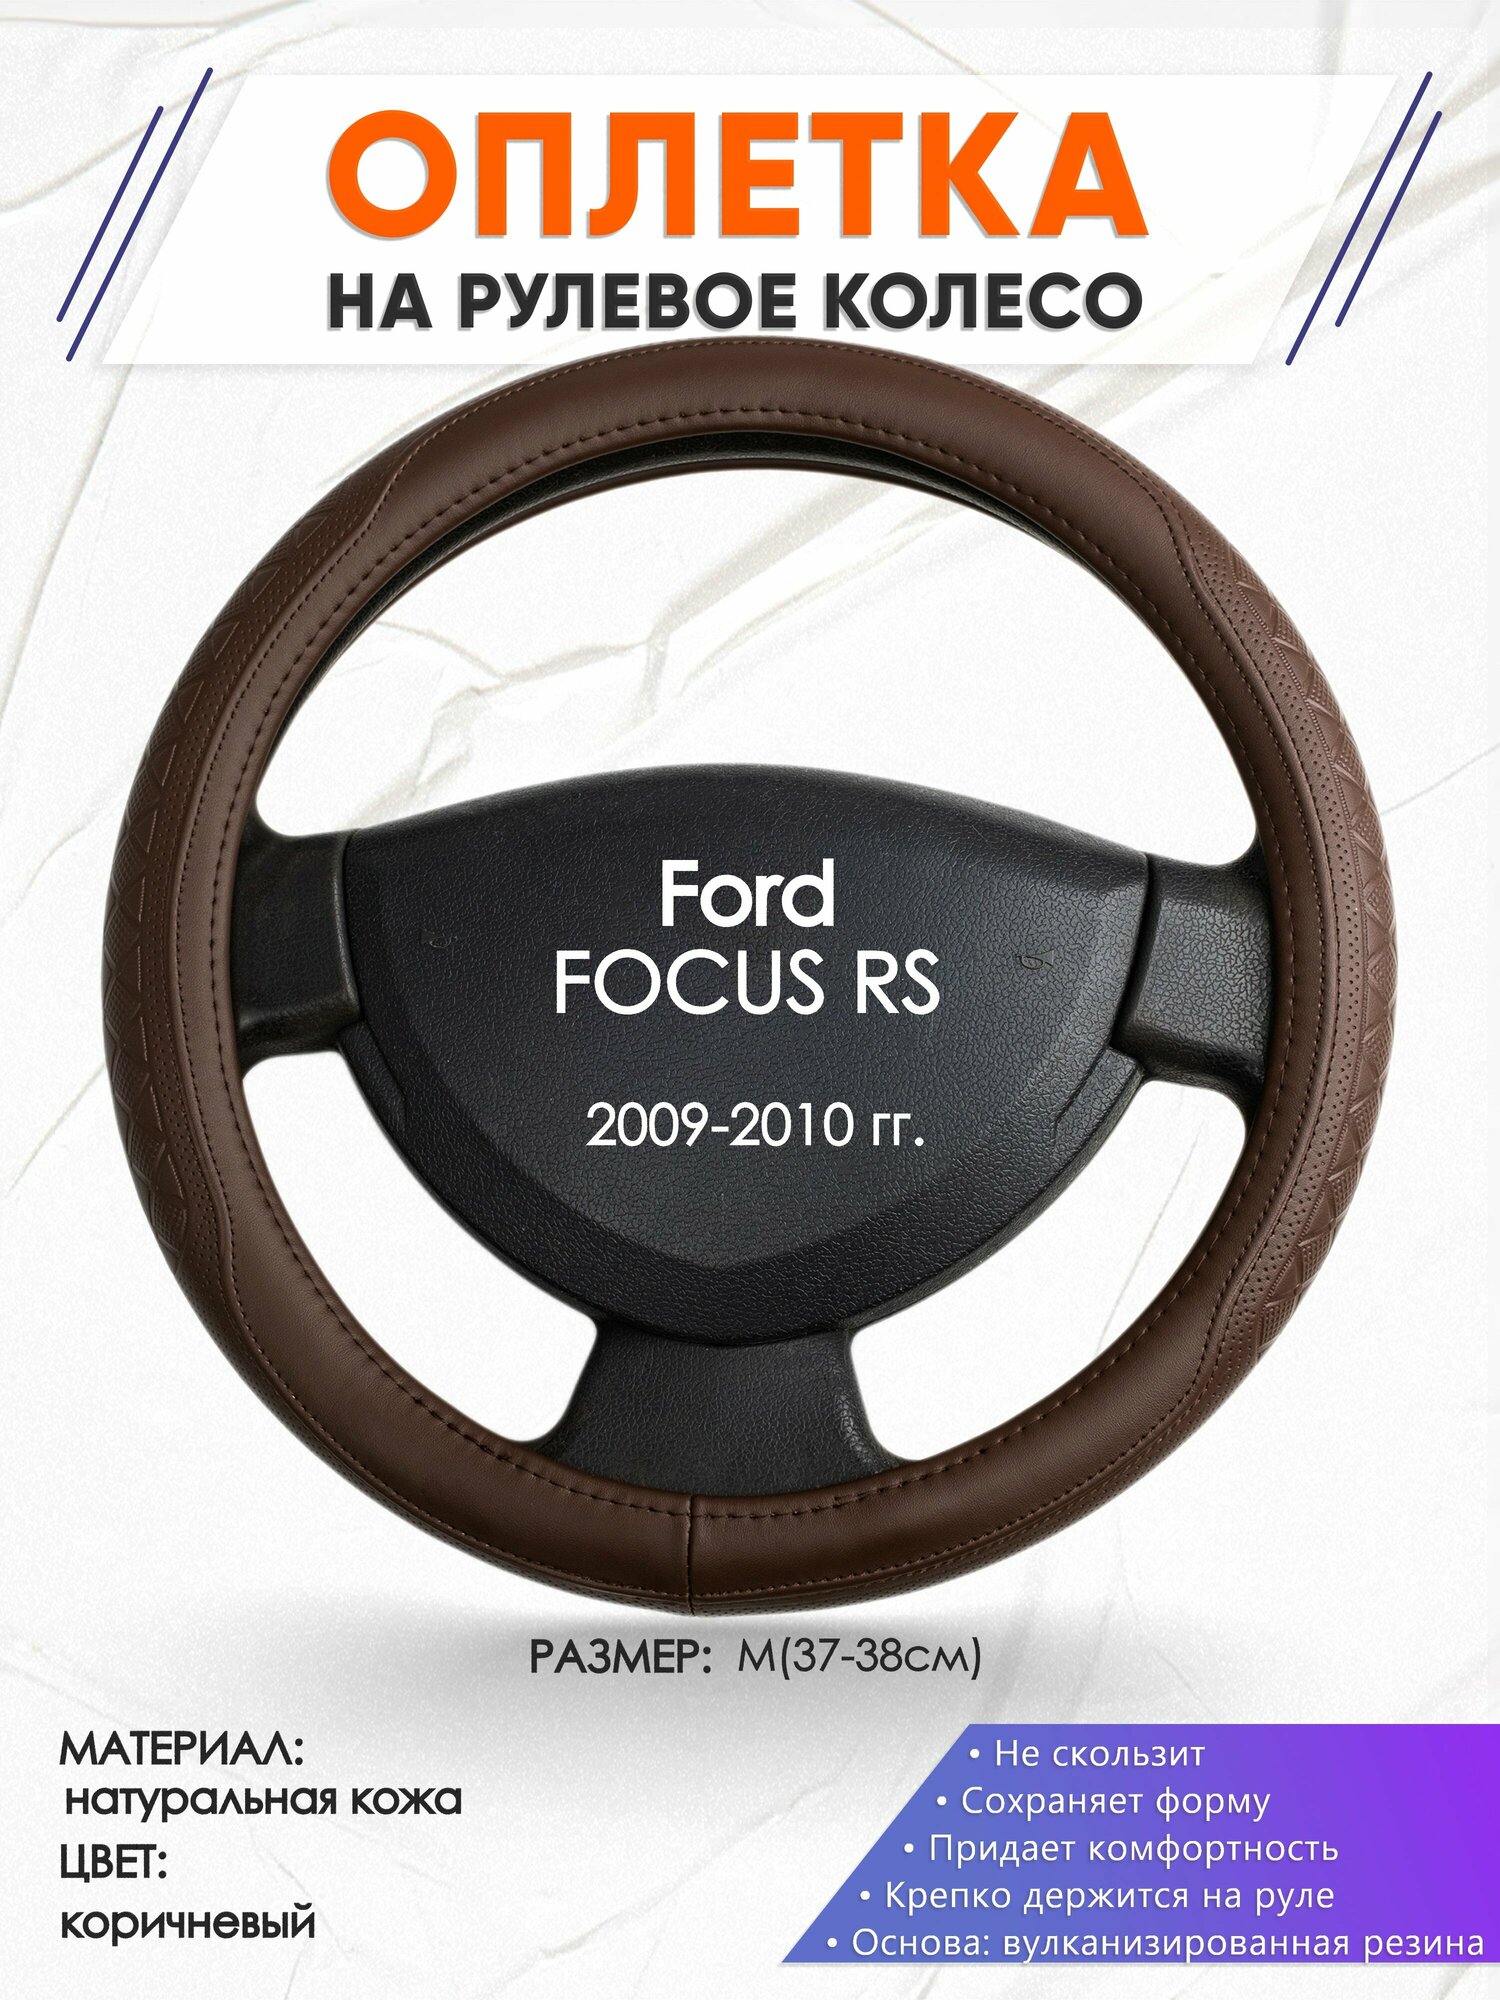 Оплетка наруль для Ford FOCUS RS(Форд Фокус рс) 2009-2010 годов выпуска, размер M(37-38см), Натуральная кожа 88